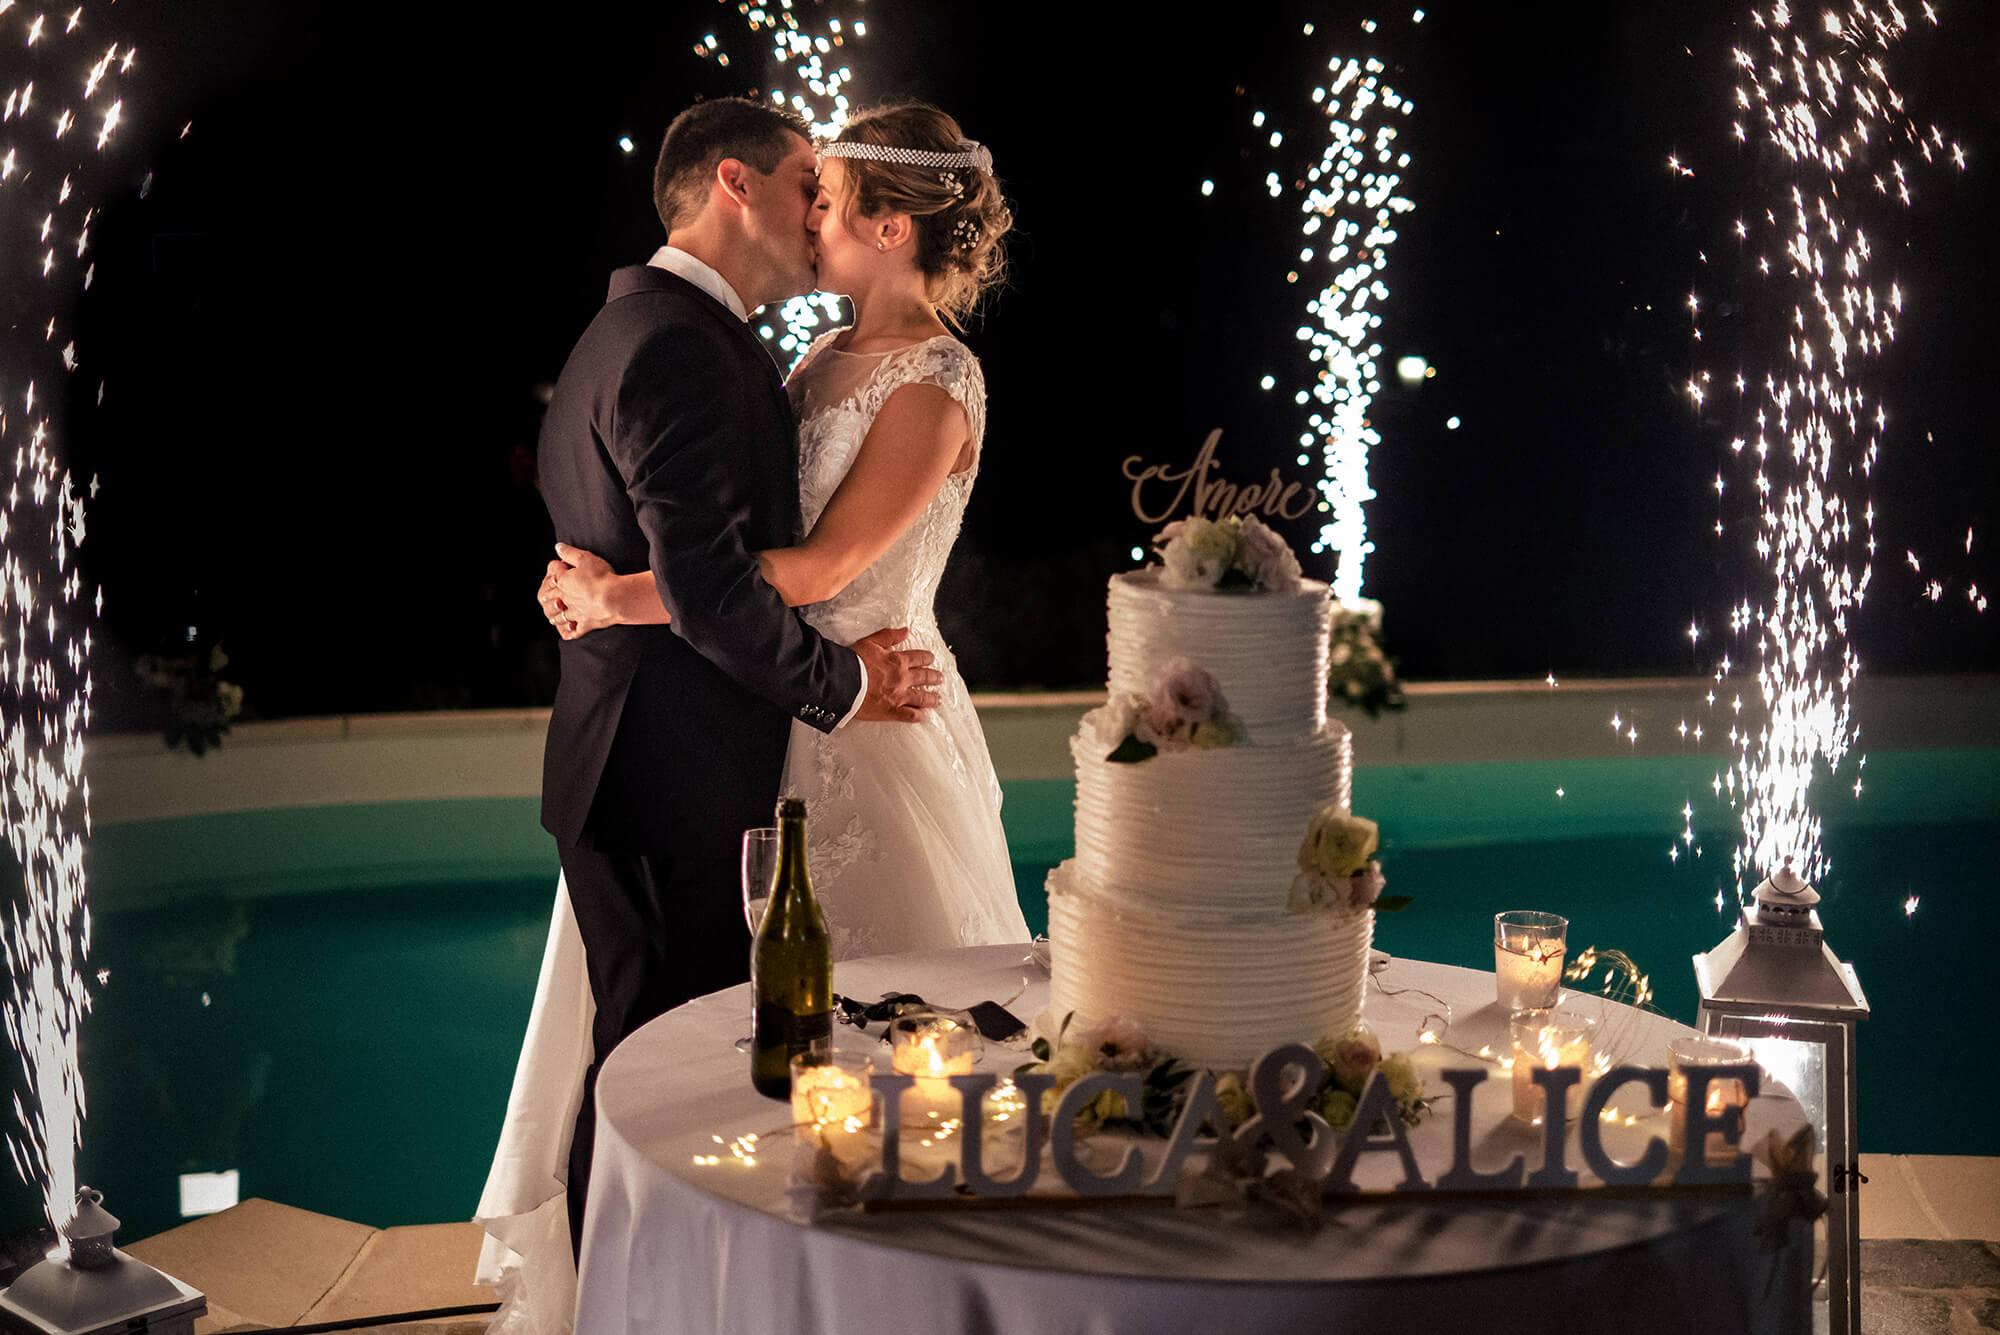 Foto del bacio degli sposi con torta e sparkle a Ca du Nonu a Vallecrosia, matrimonio in provincia di Imperia.